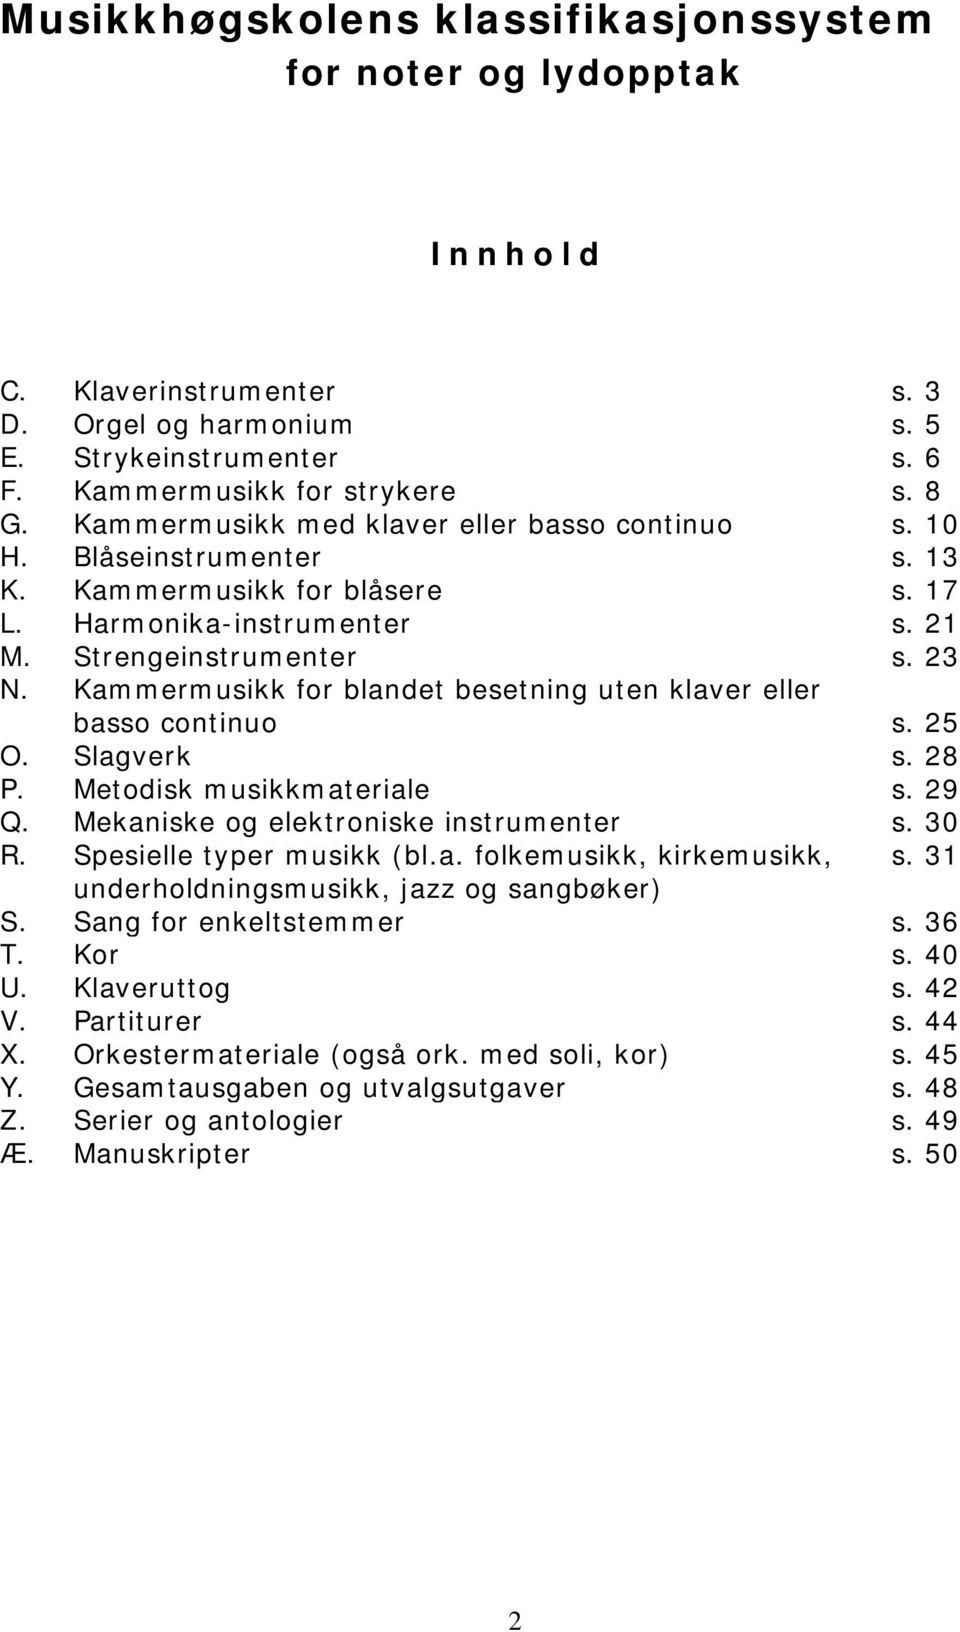 Kammermusikk for blandet besetning uten klaver eller basso continuo s. 25 O. Slagverk s. 28 P. Metodisk musikkmateriale s. 29 Q. Mekaniske og elektroniske instrumenter s. 30 R.